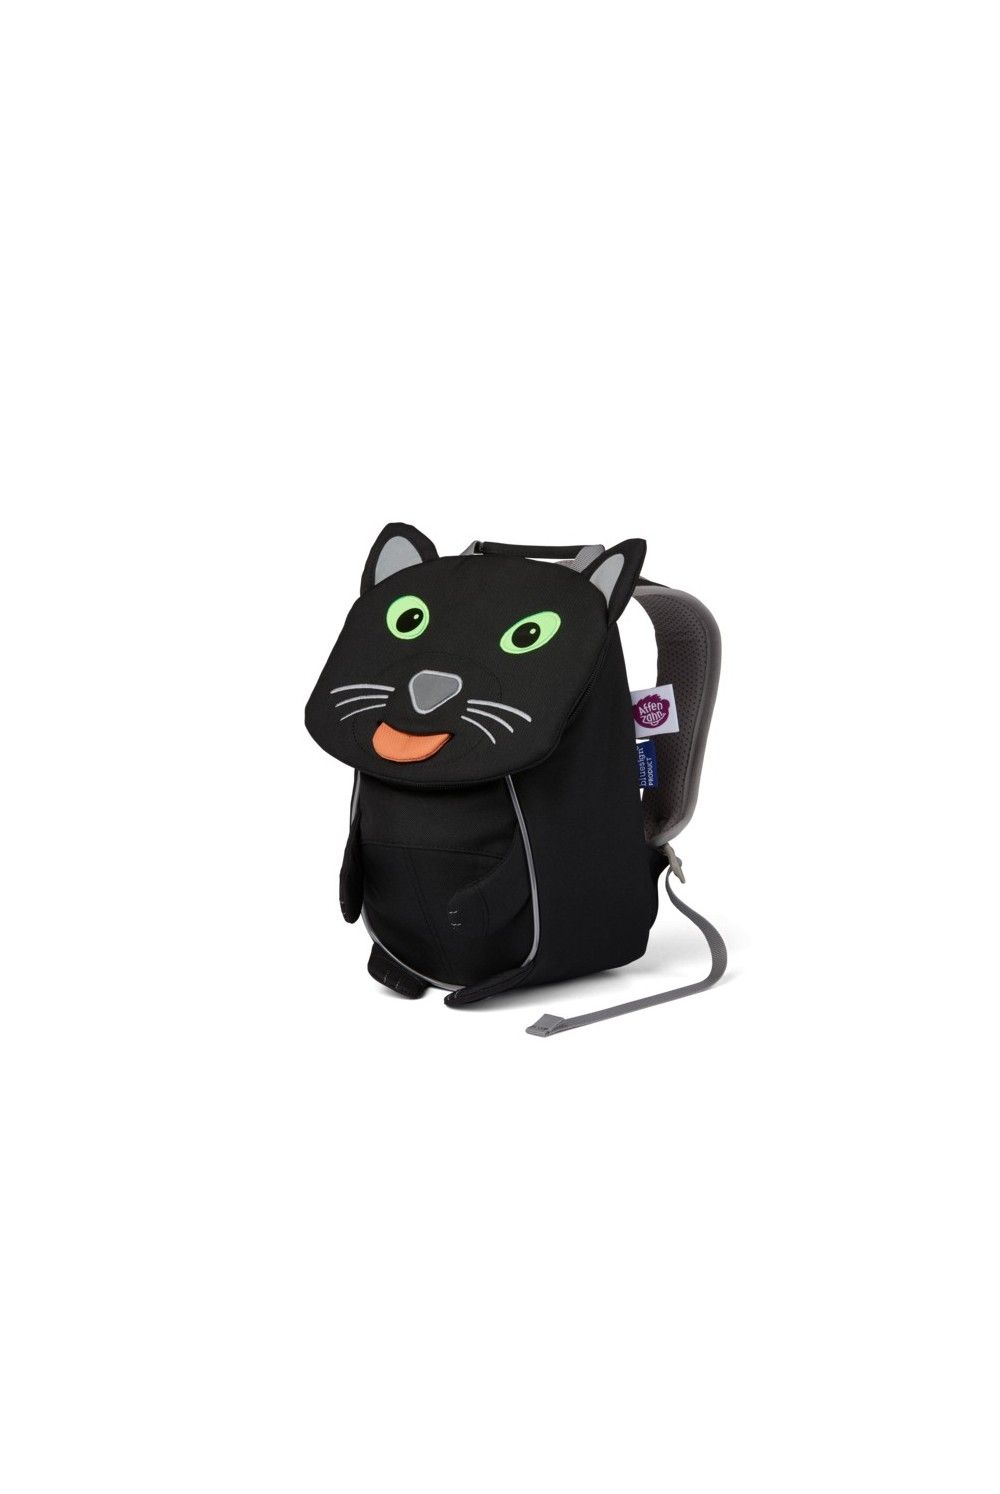 Children backpack Affenzahn little friend Panther